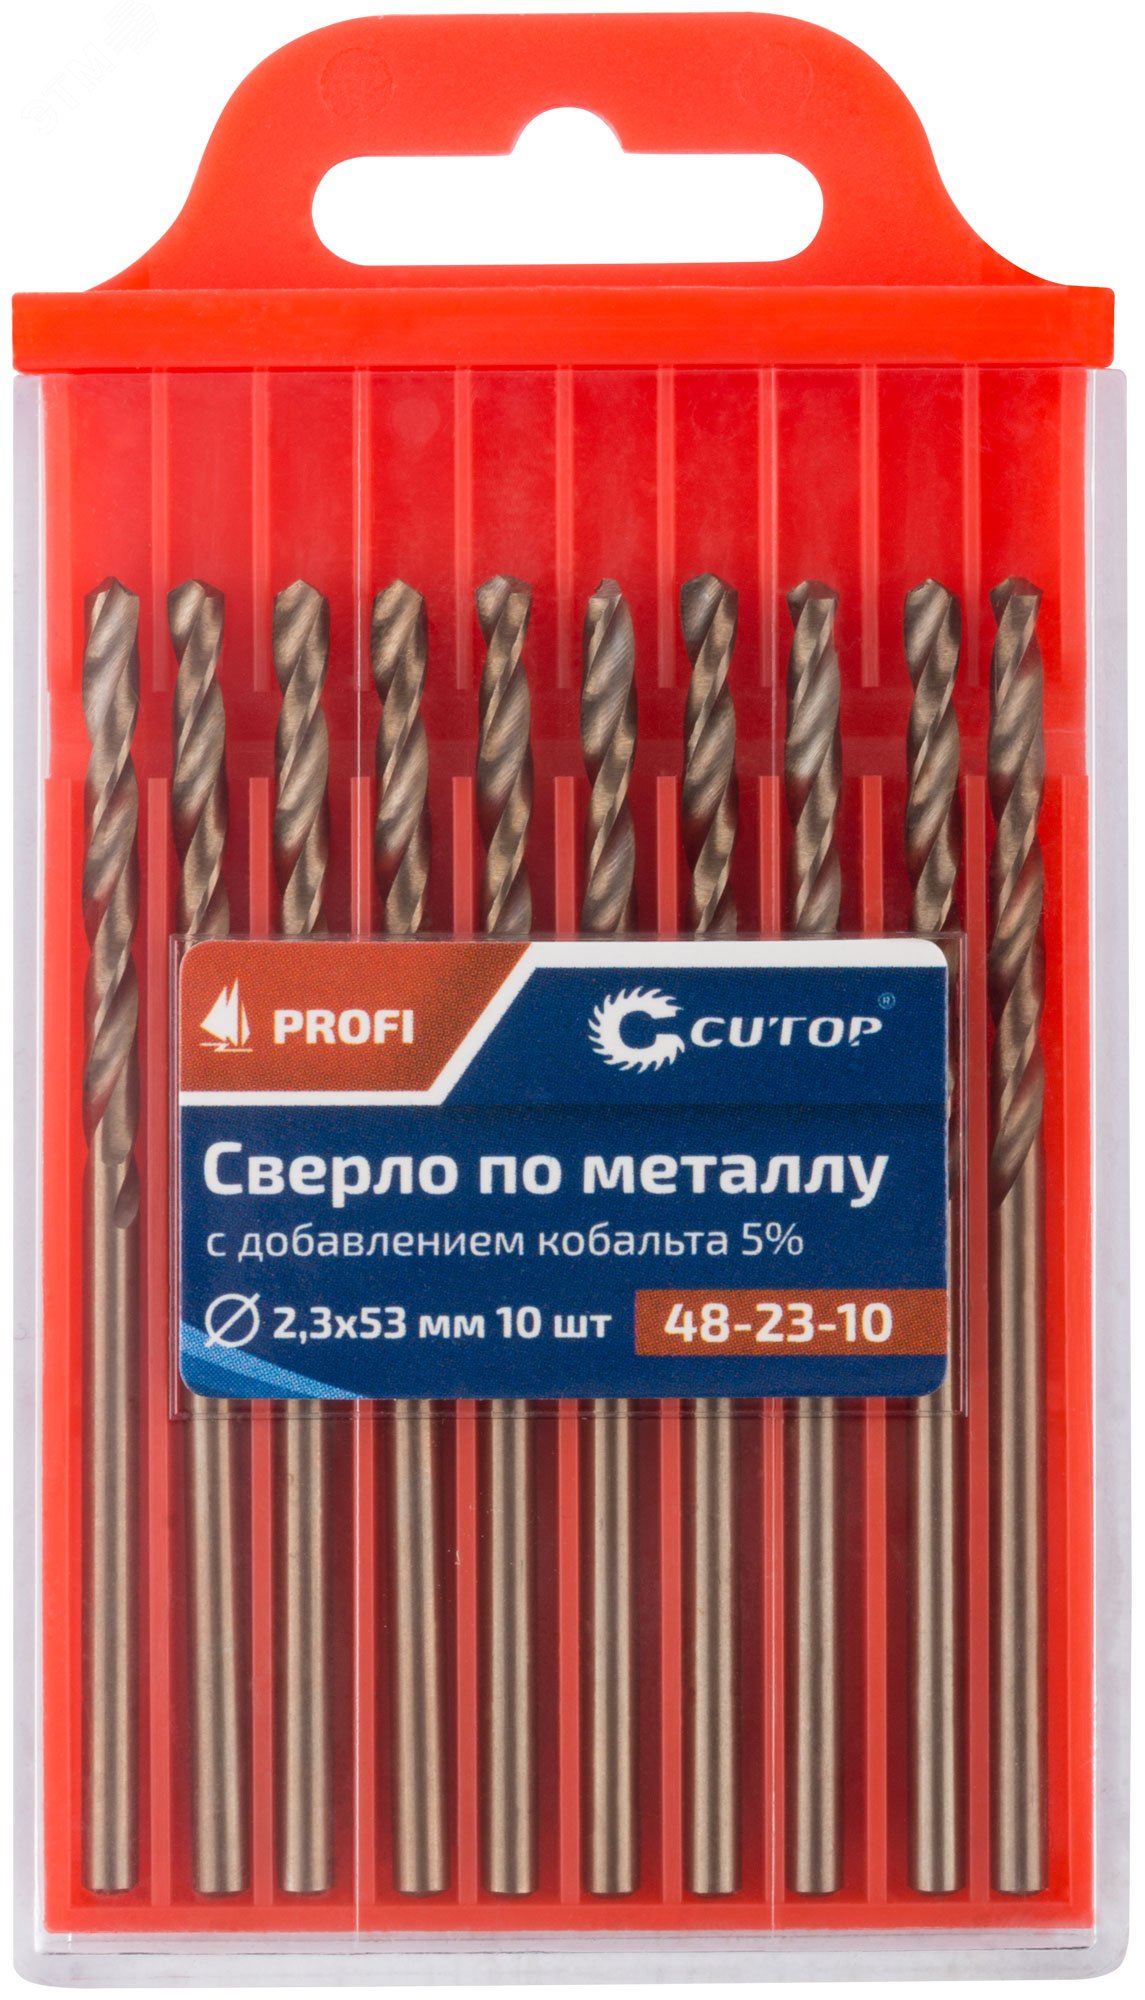 Сверло по металлу Cutop Profi с кобальтом 5%, 2.3 x 53 мм (10 шт) 48-23-10 CUTOP - превью 3